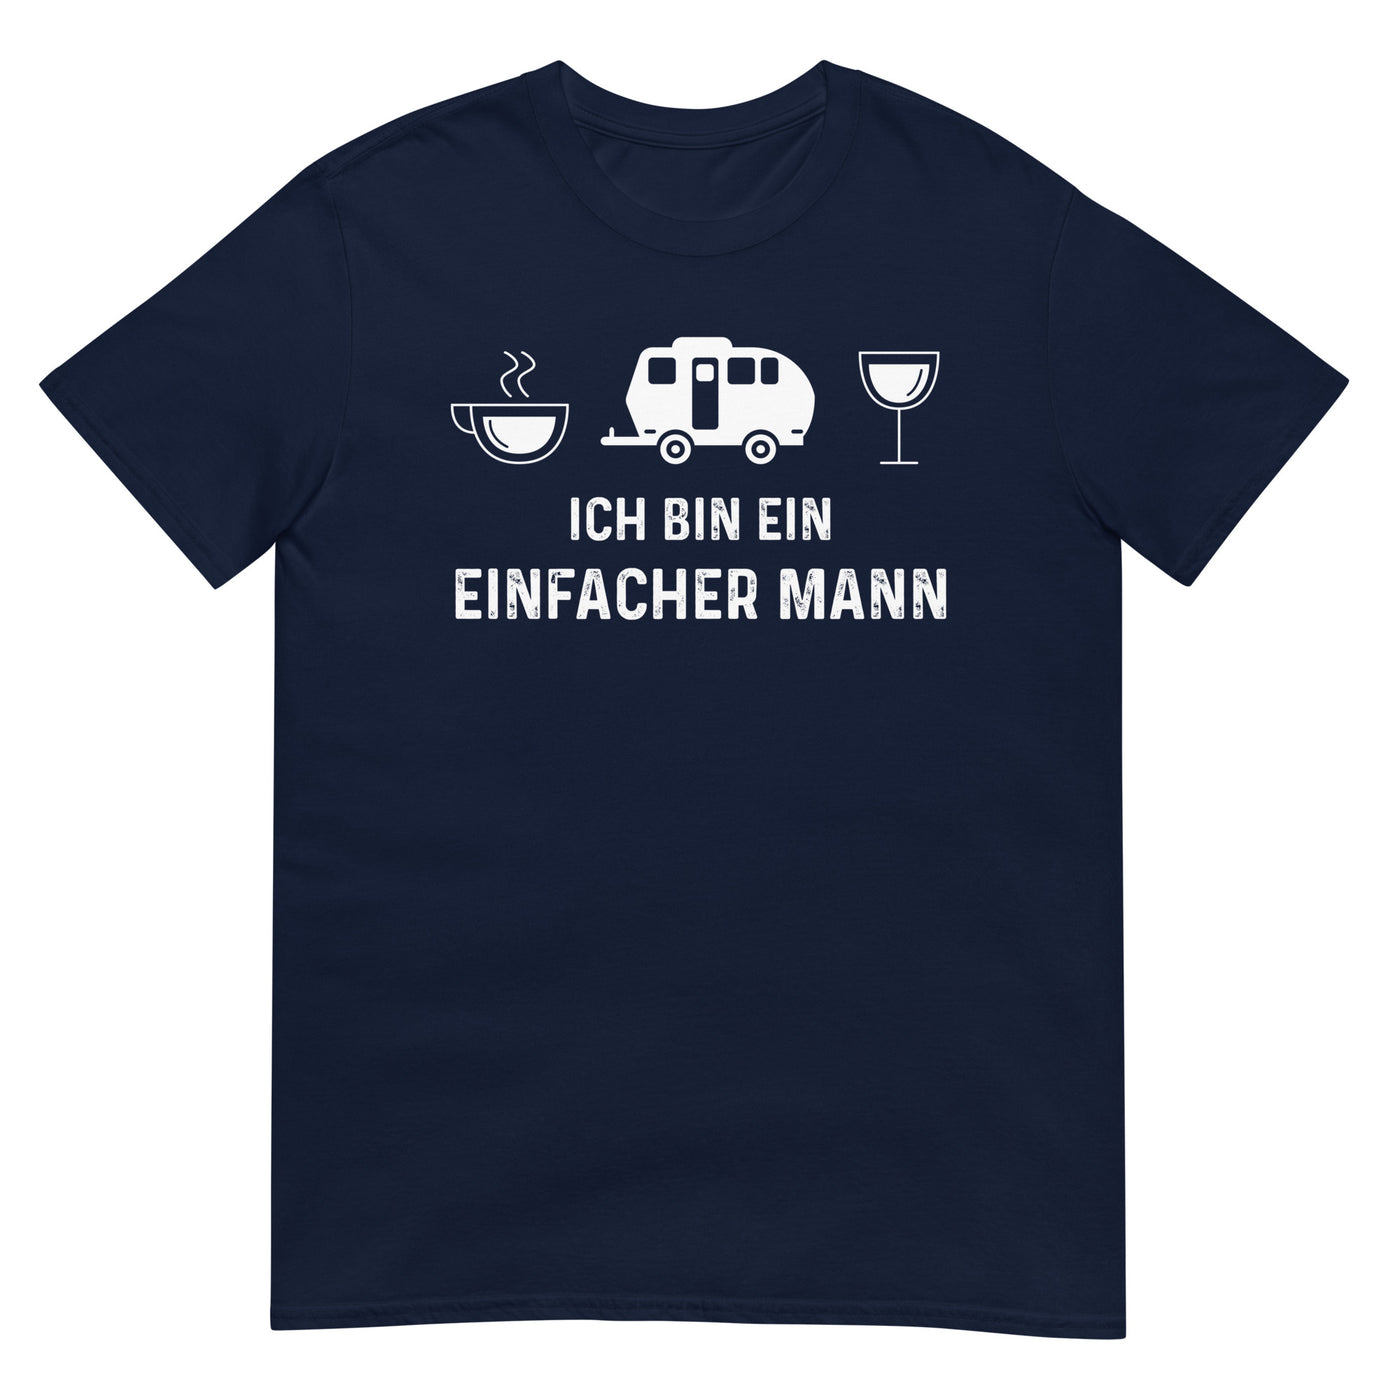 Ich Bin Ein Einfacher Mann 2 - T-Shirt (Unisex) camping xxx yyy zzz Navy